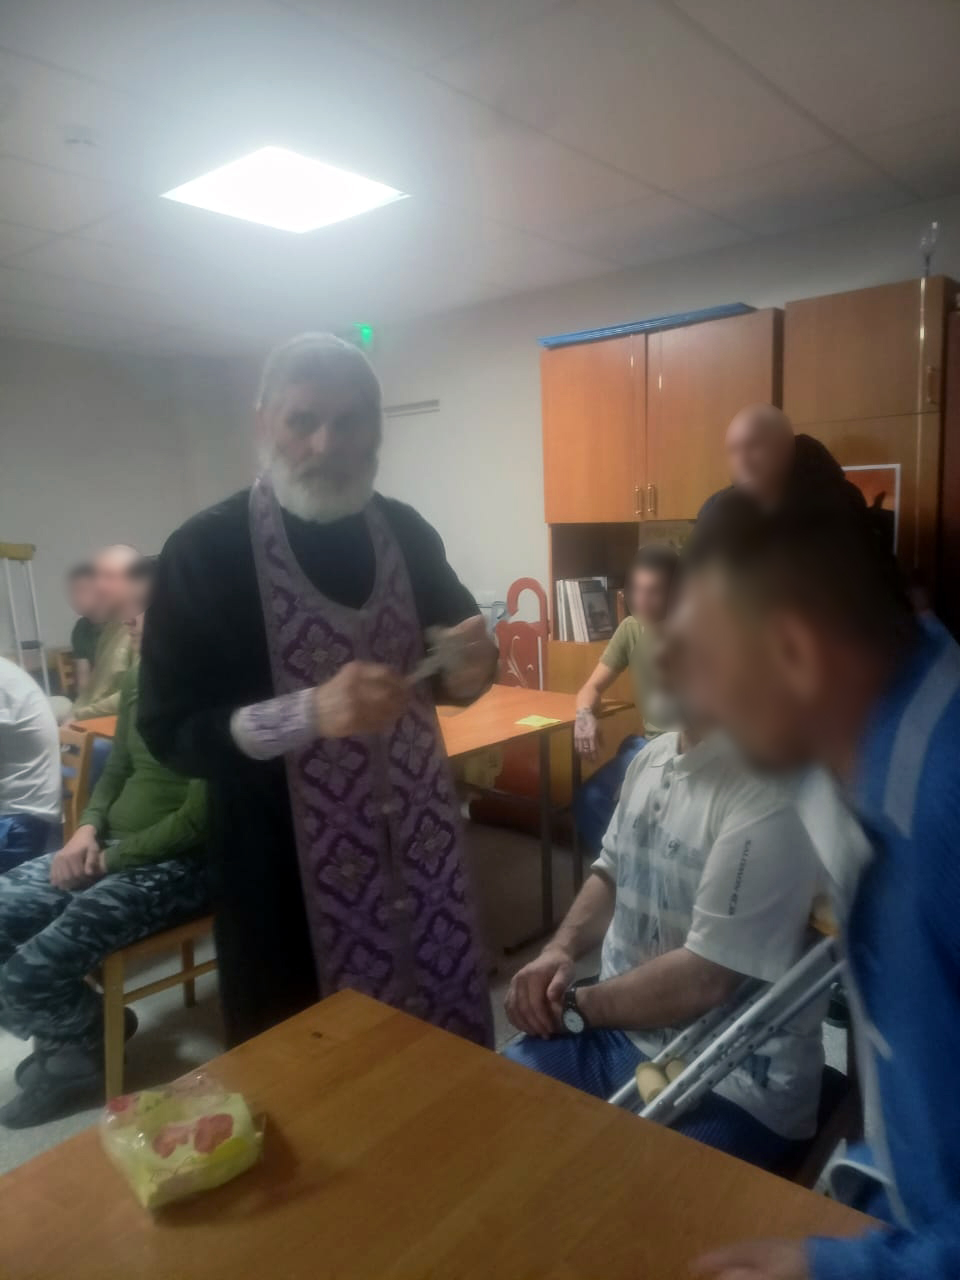 Священники посетили в госпитале раненных в СВО